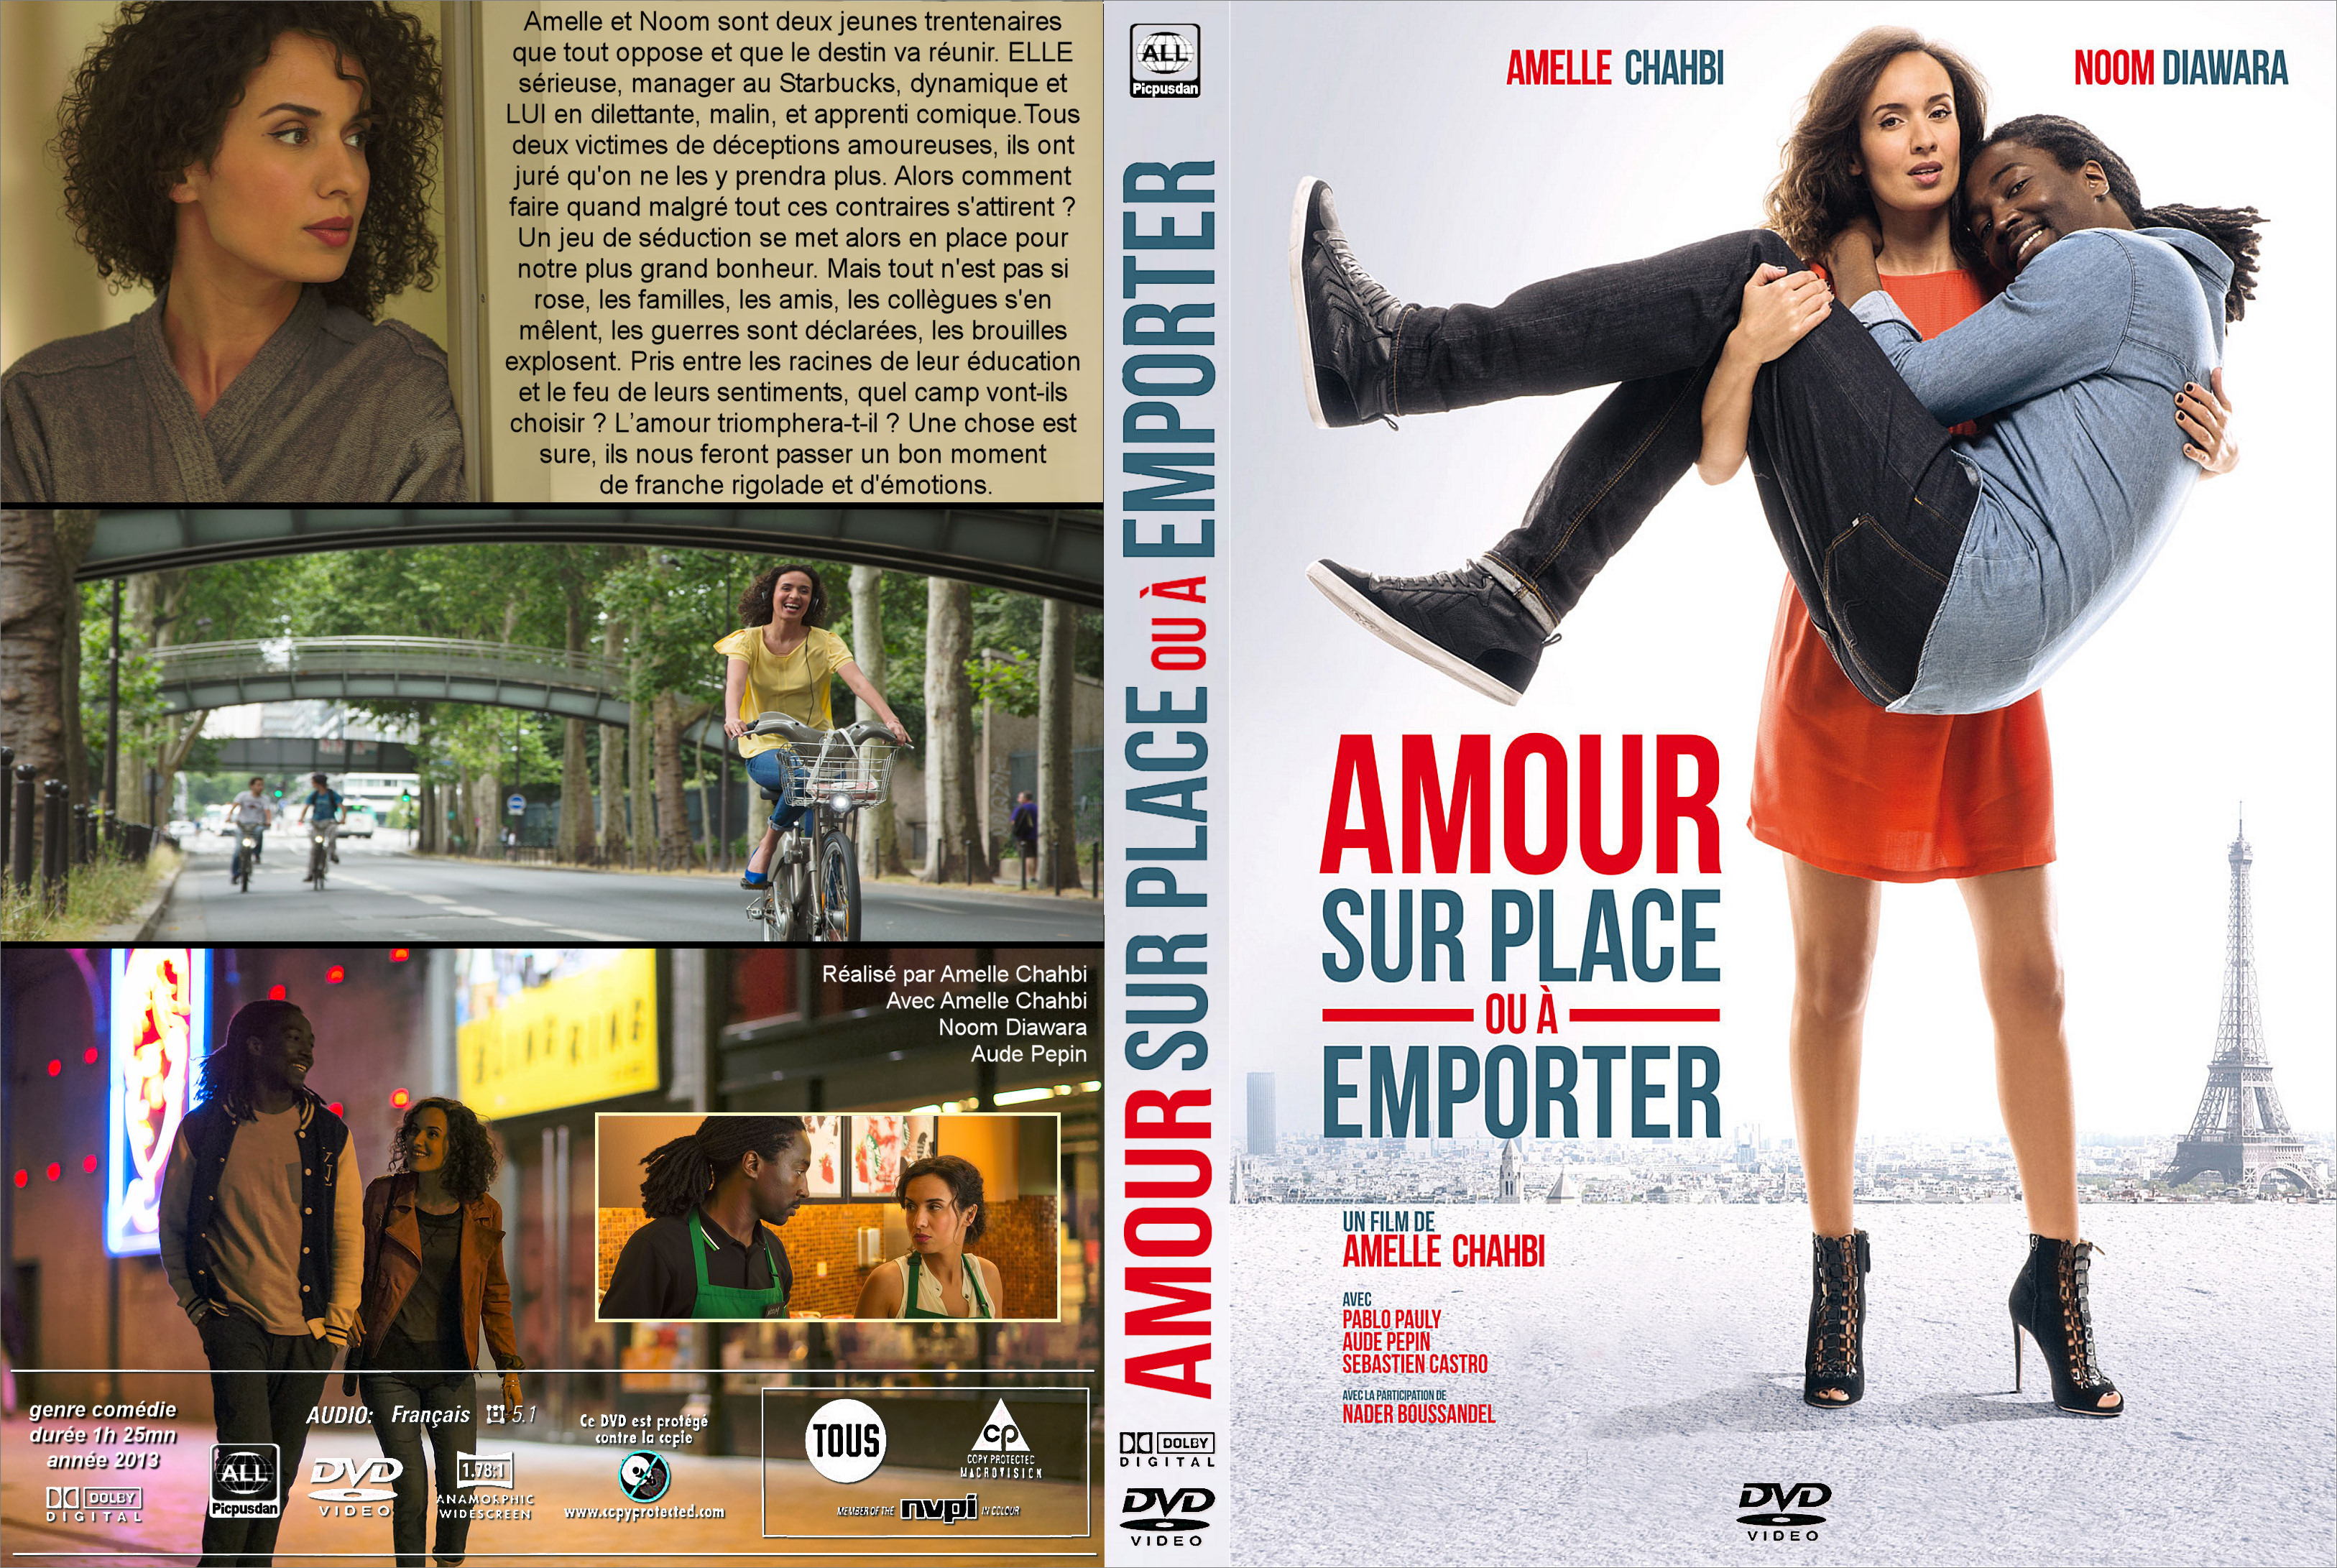 Jaquette DVD Amour sur place ou a emporter custom v2